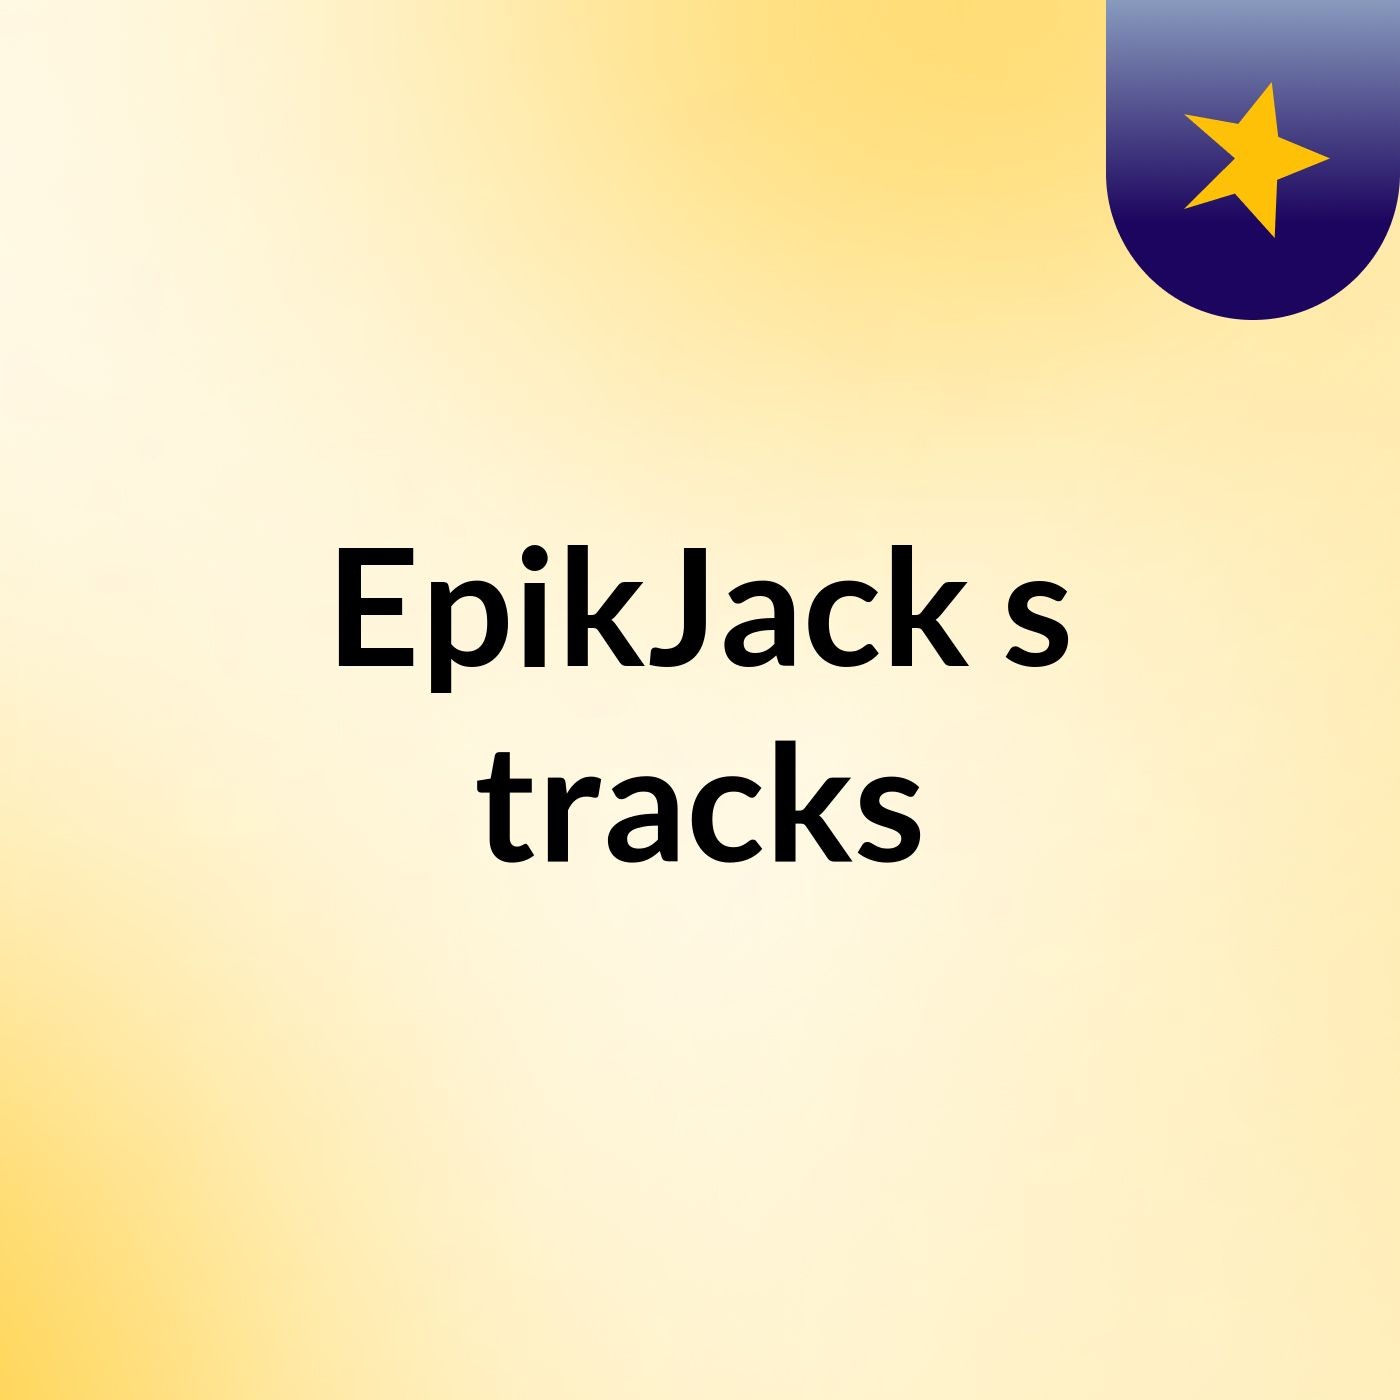 EpikJack's tracks